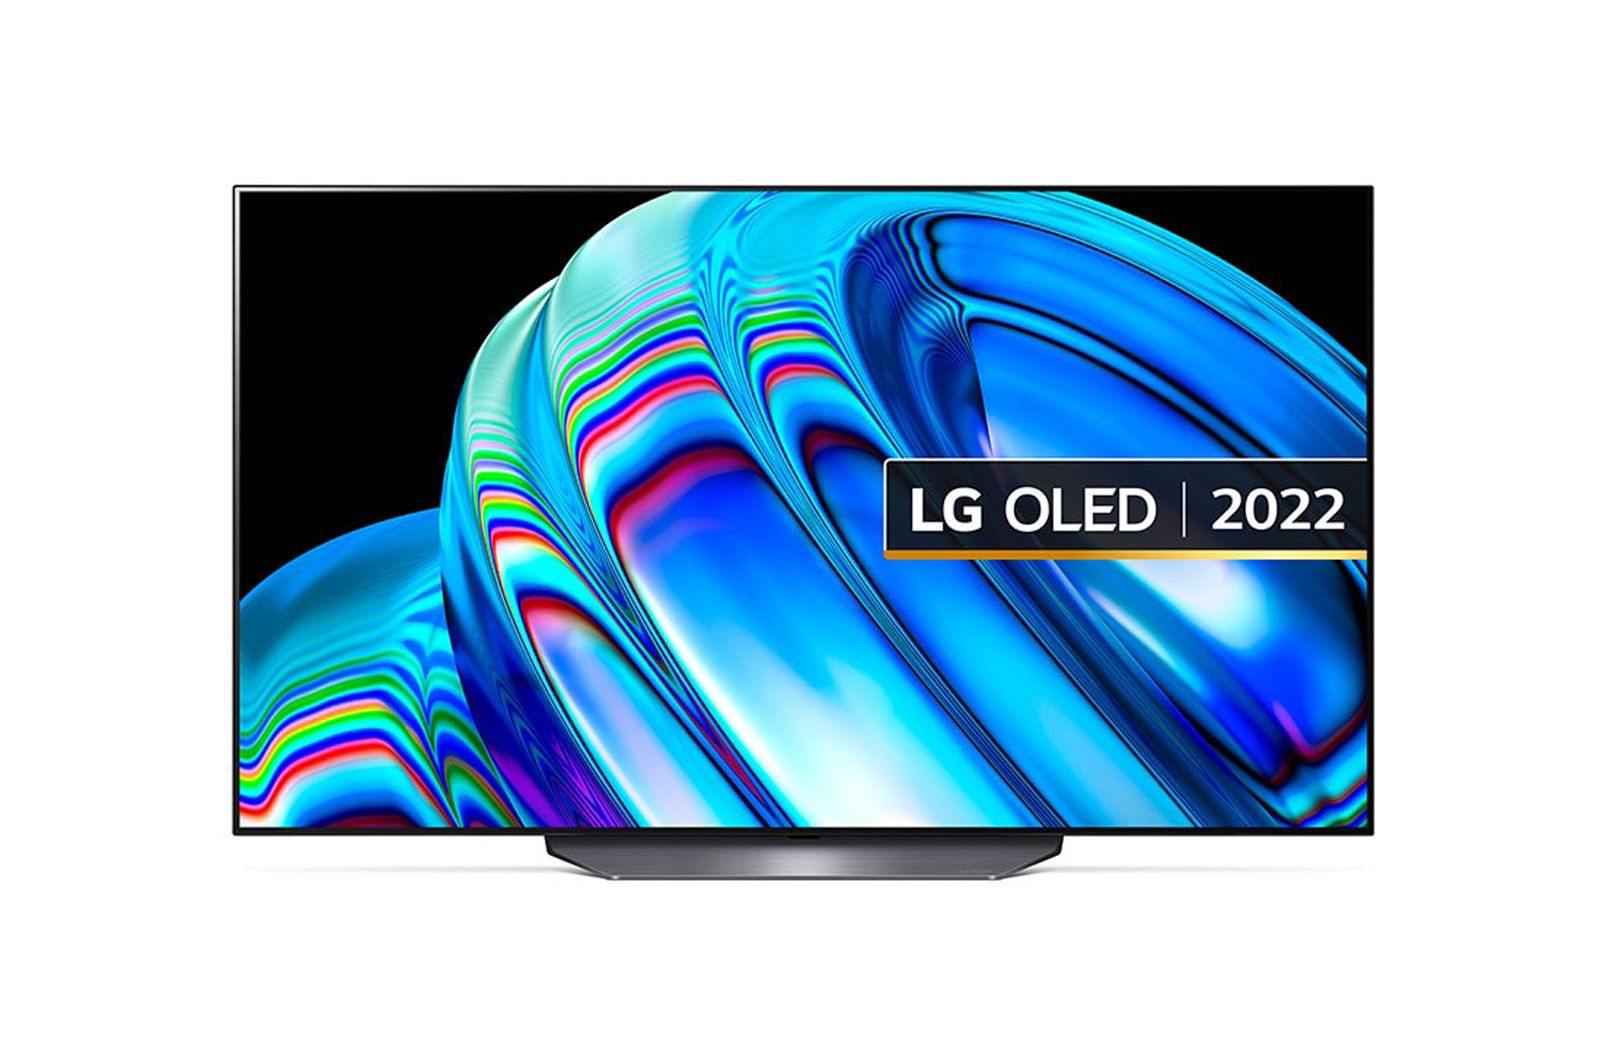 LG OLED TV 2022 image 4